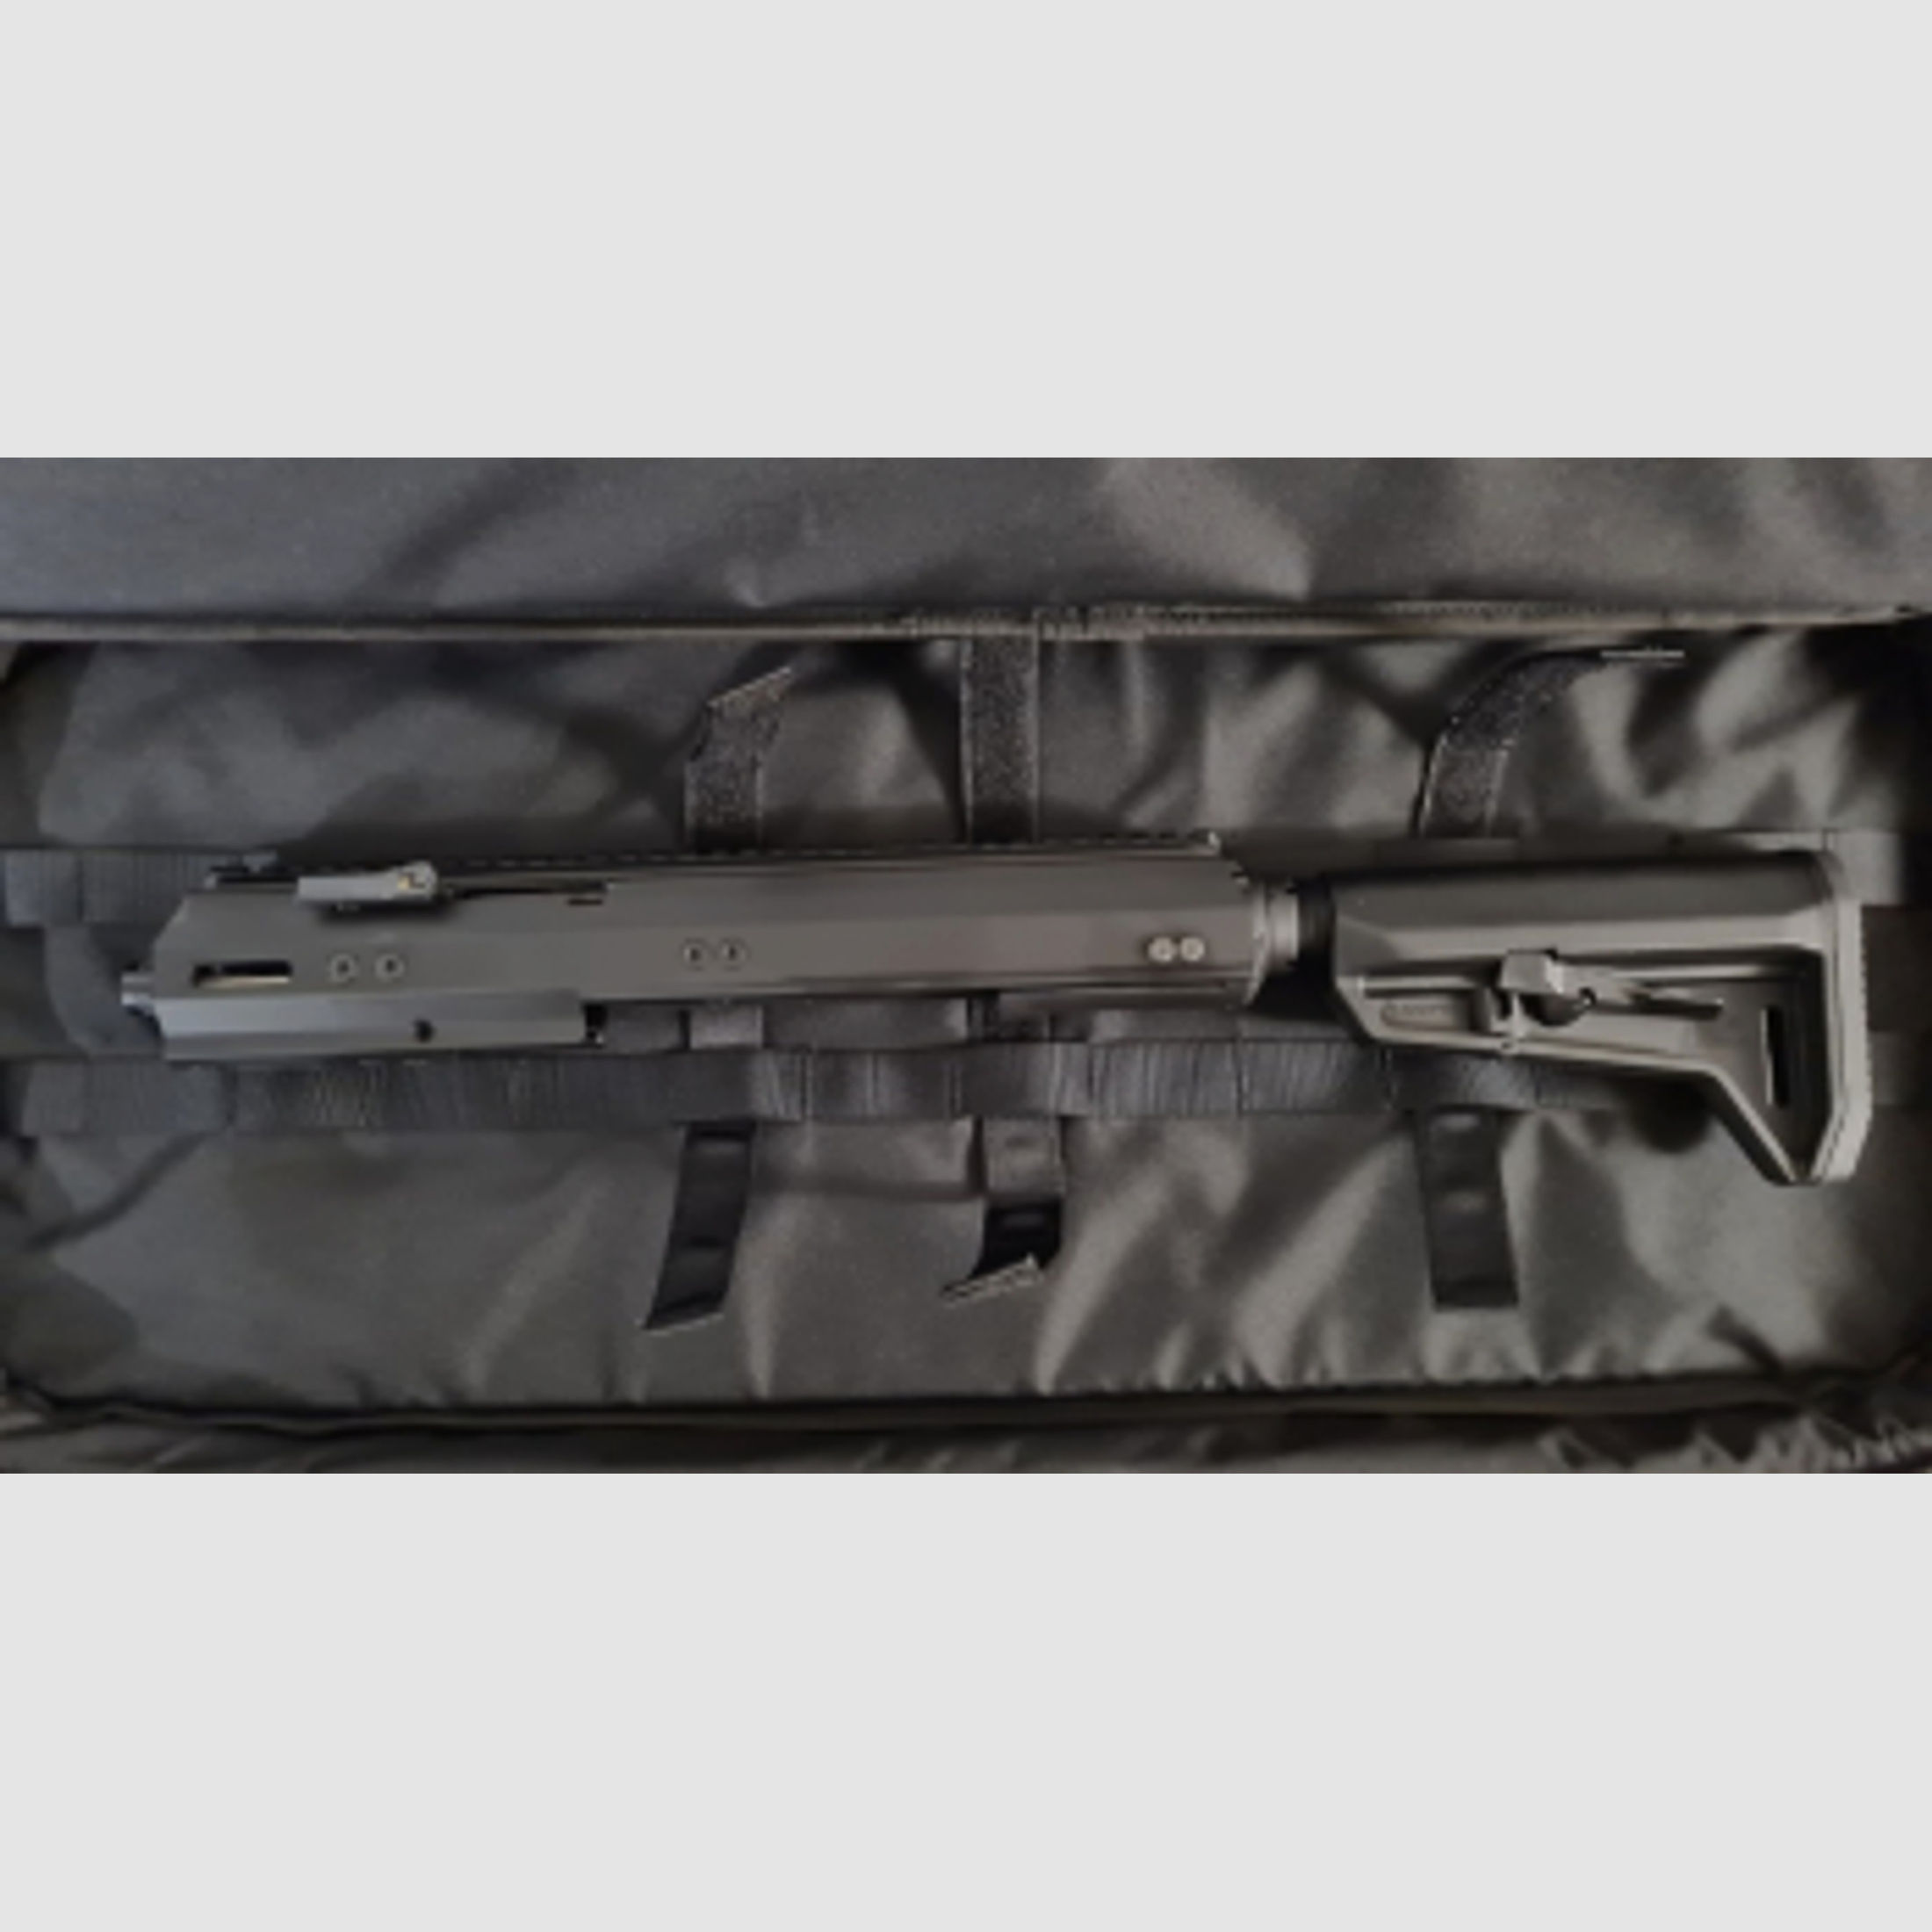 Norlite Wechselsystem Glock 17 Gen 5 9mm Luger Subcompact